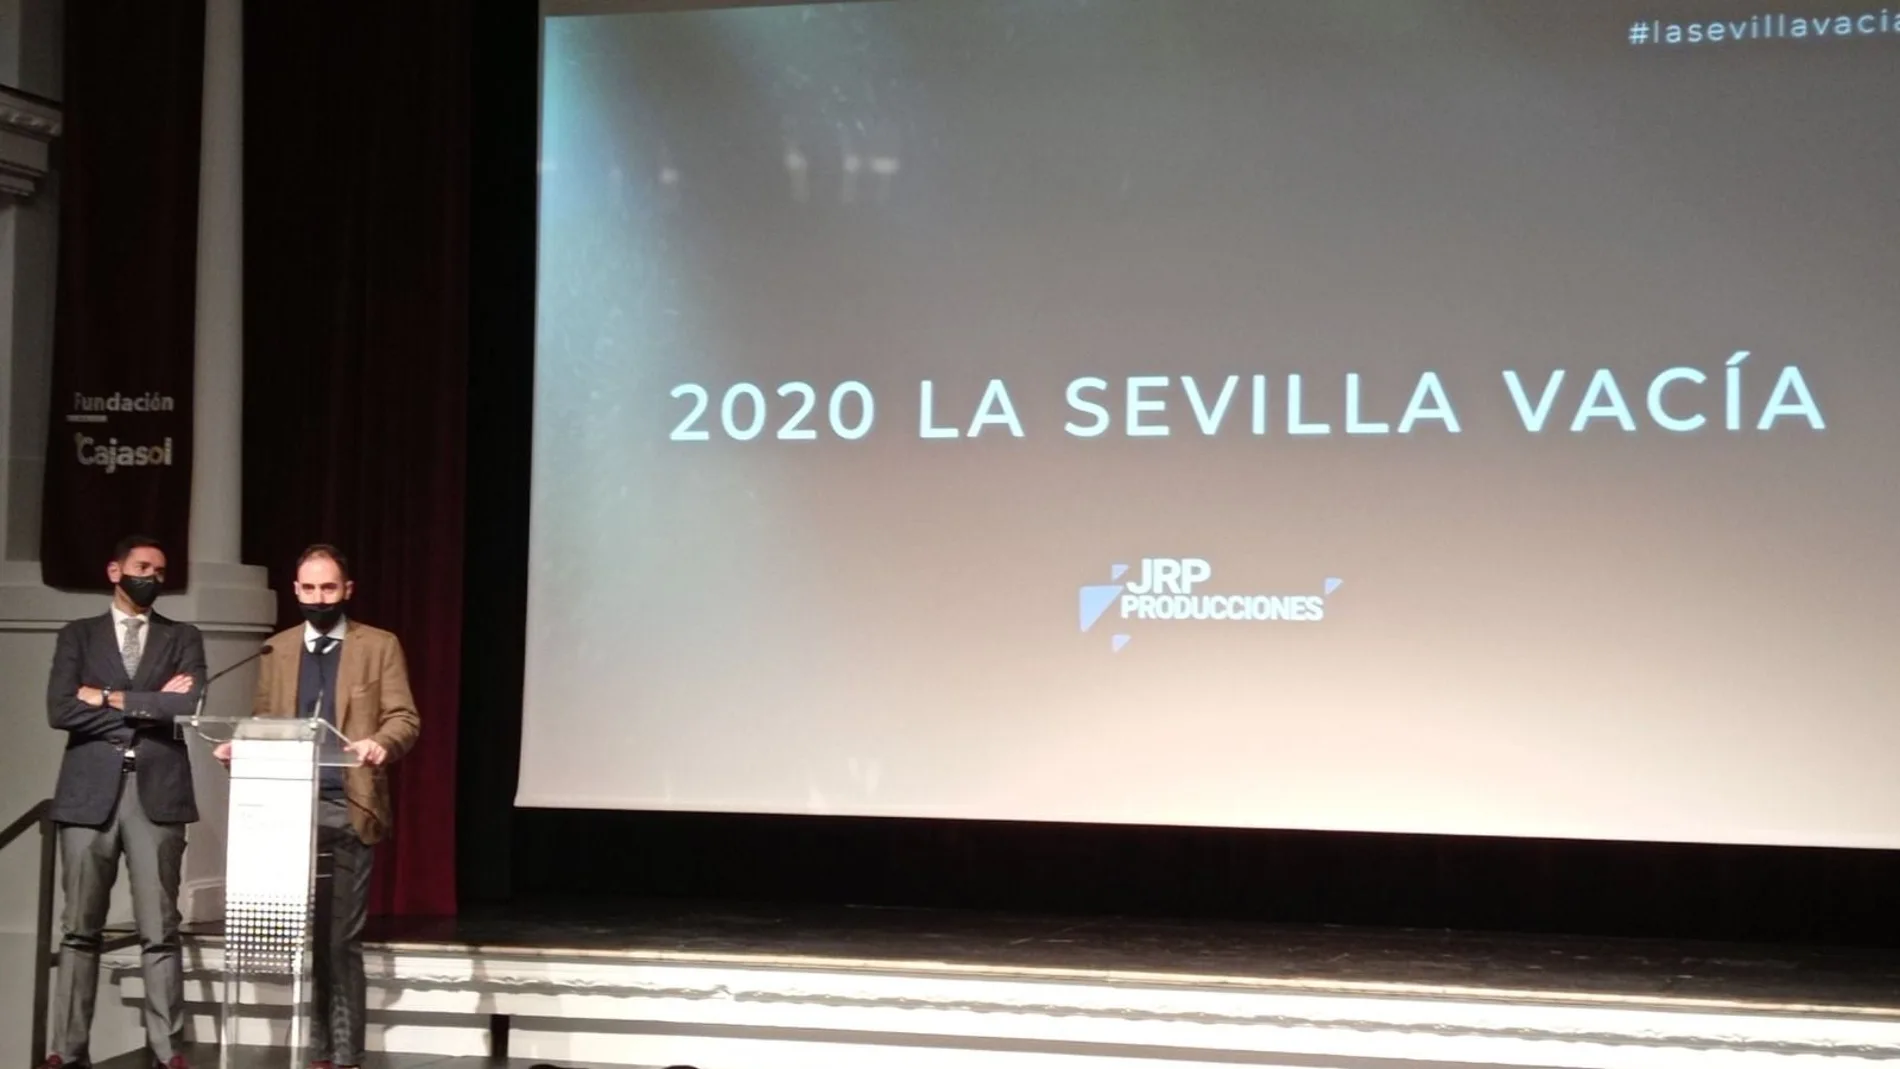 El documental "2020, la Sevilla vacía" se proyectó en la Fundación Cajasol